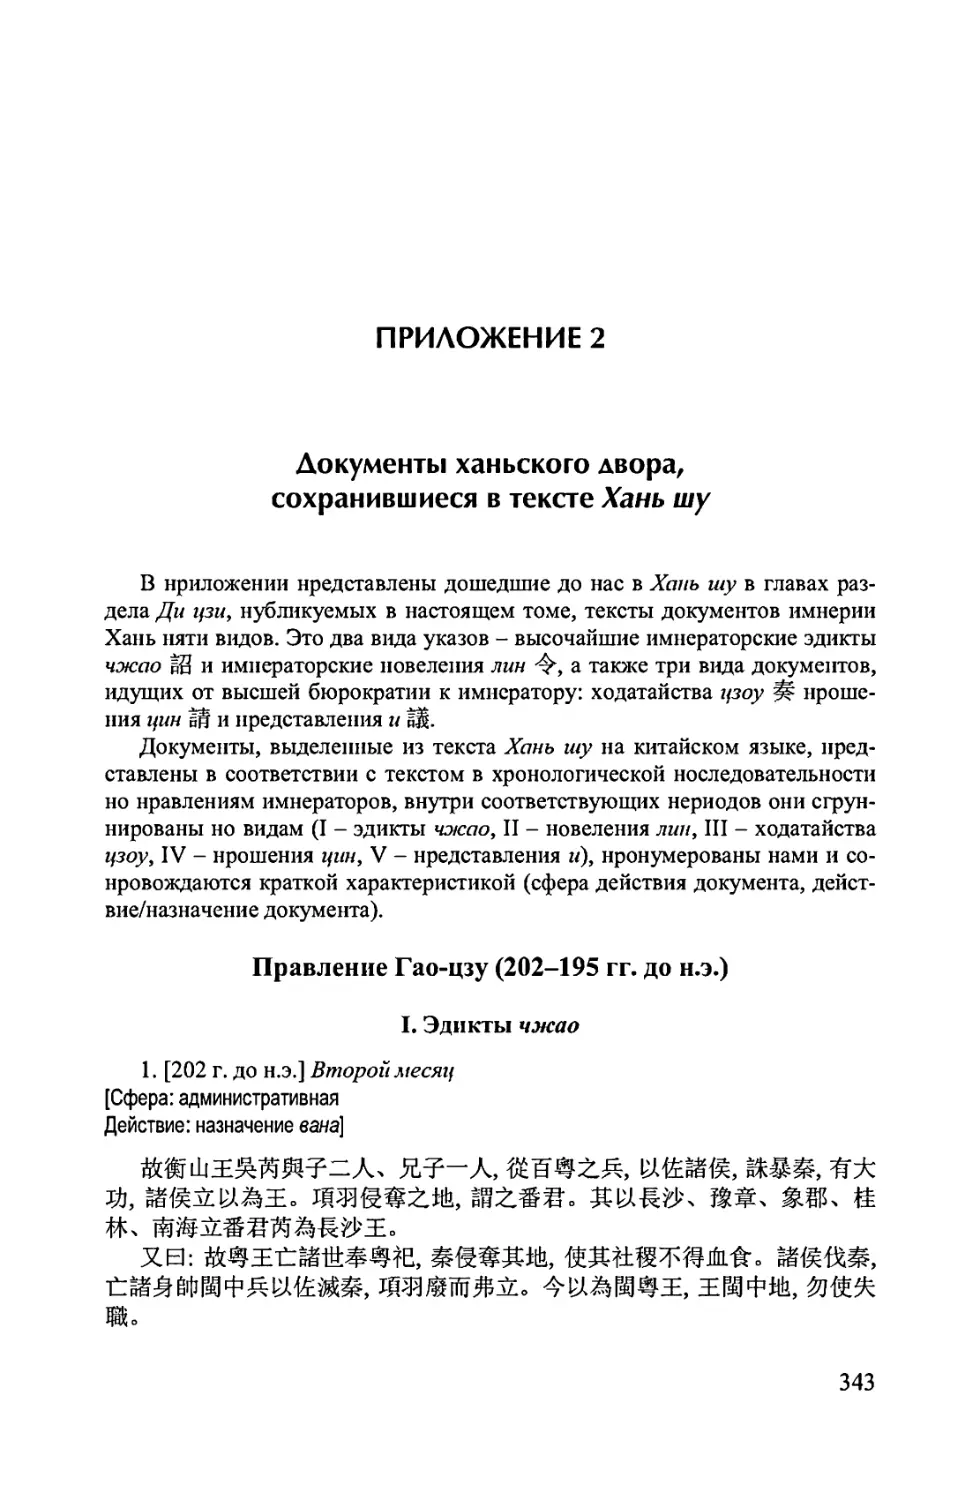 Приложение 2. Документы ханьского двора. сохранившиеся в тексте Хань шу